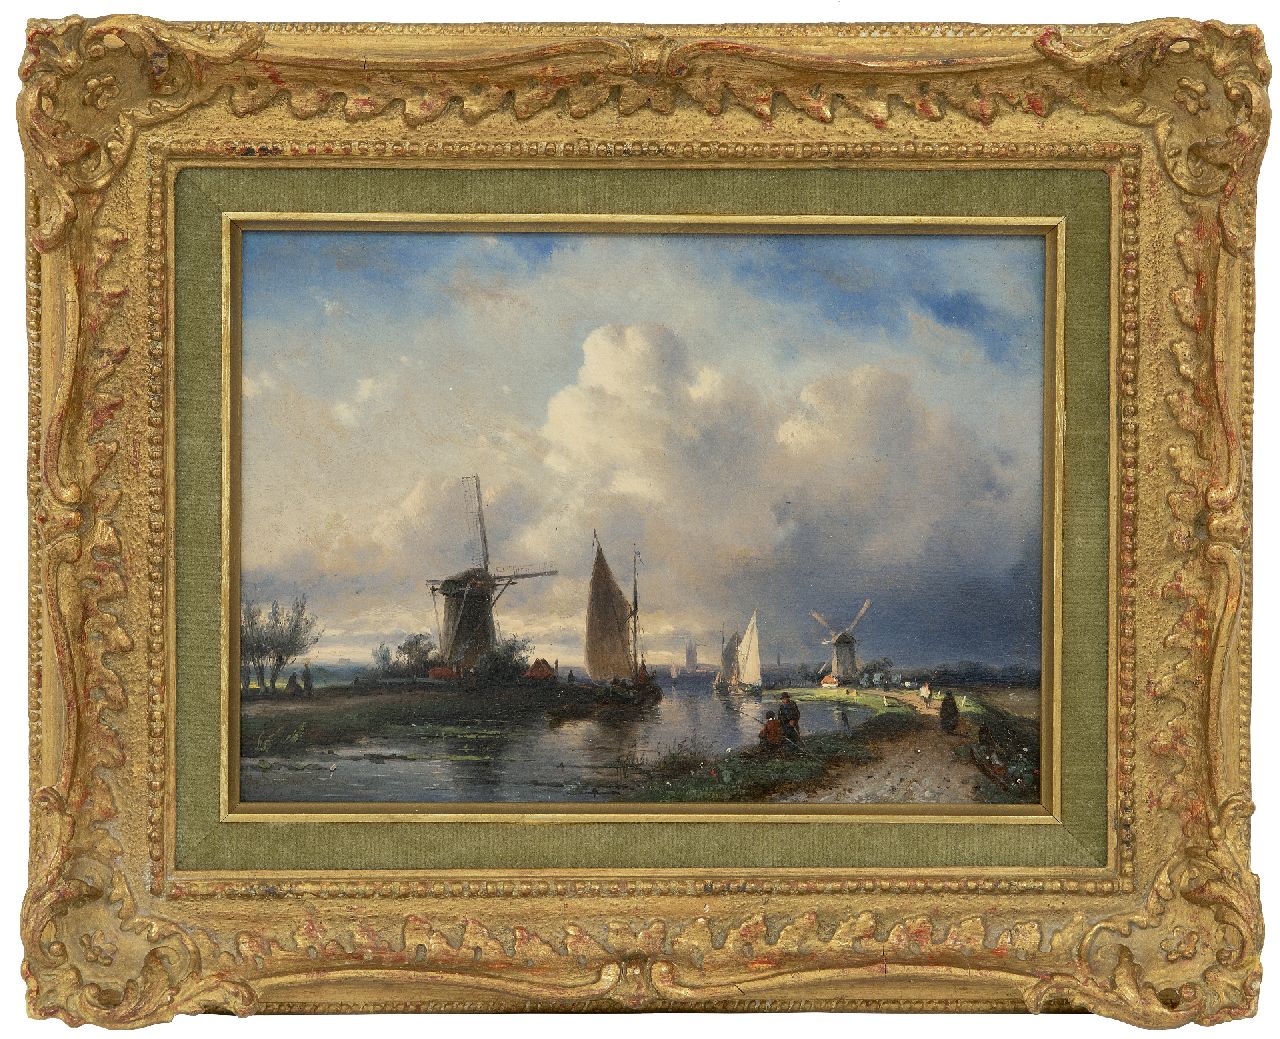 Leickert C.H.J.  | 'Charles' Henri Joseph Leickert | Schilderijen te koop aangeboden | Langs de rivier, olieverf op paneel 17,9 x 24,8 cm, gesigneerd linksonder